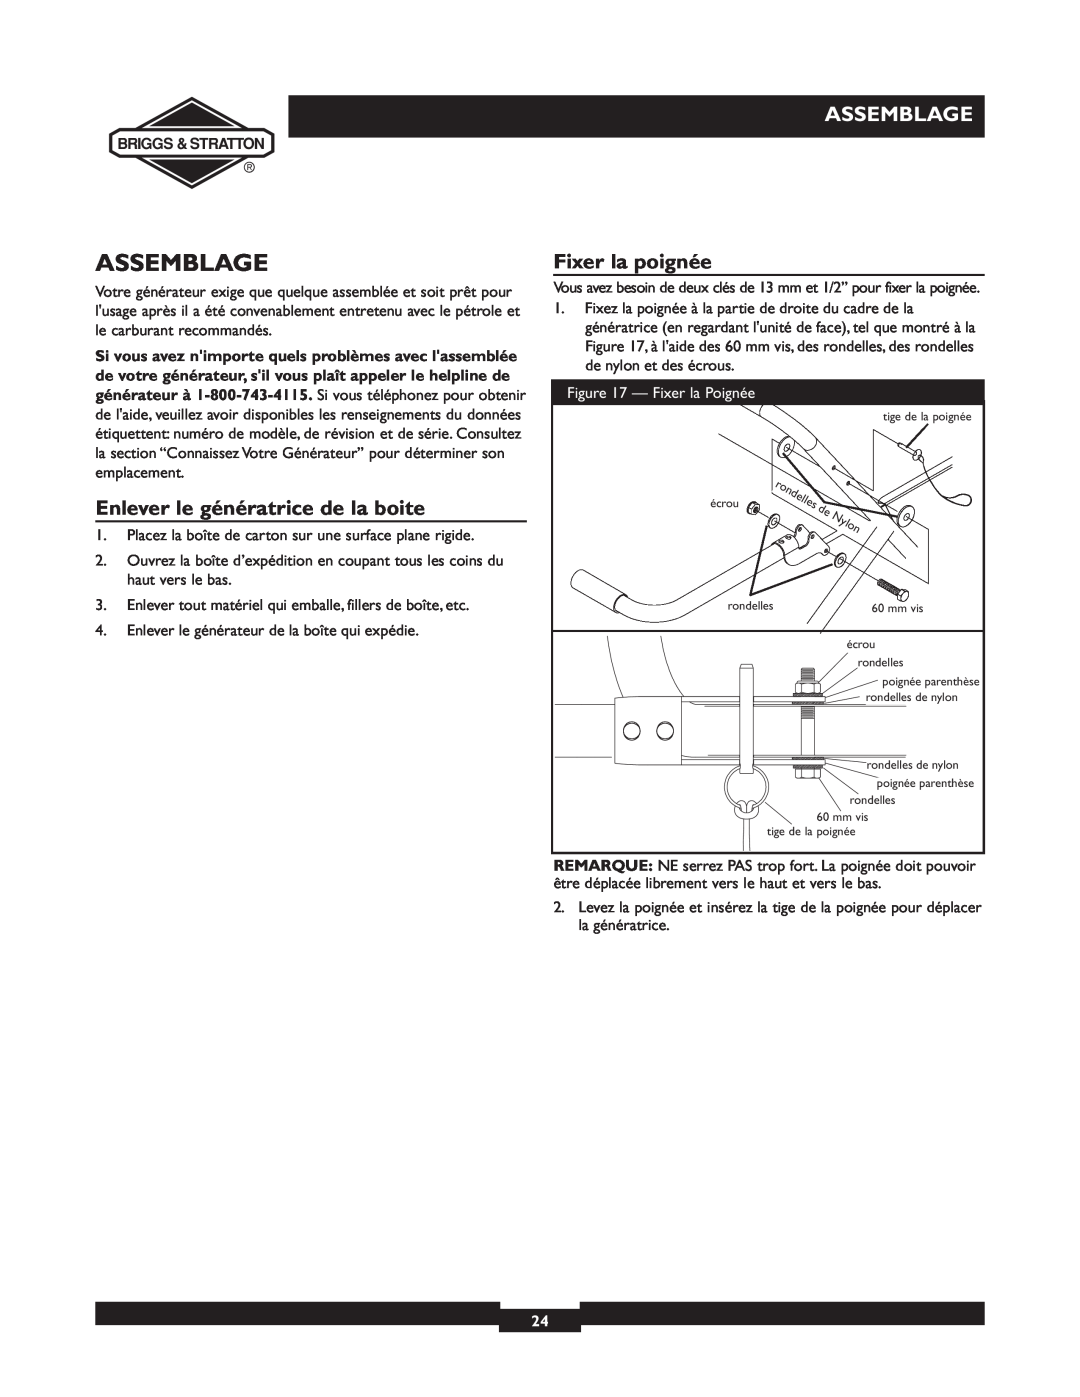 Briggs & Stratton 01894-1 manual Assemblage, Enlever le génératrice de la boite, Fixer la poignée, Fixer la Poignée 